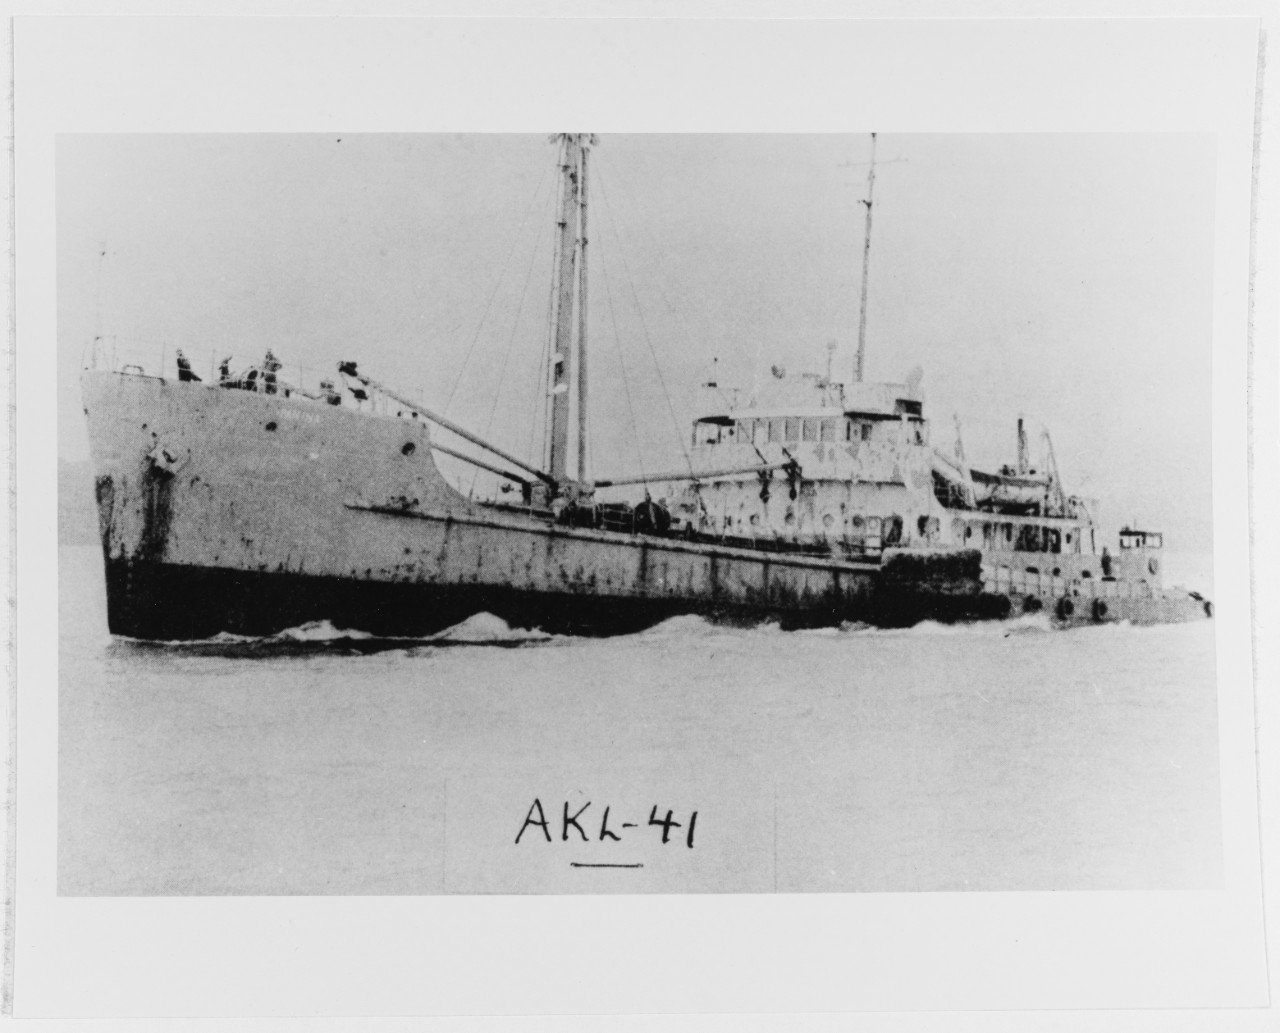 USS PAMINA (AKL-4)